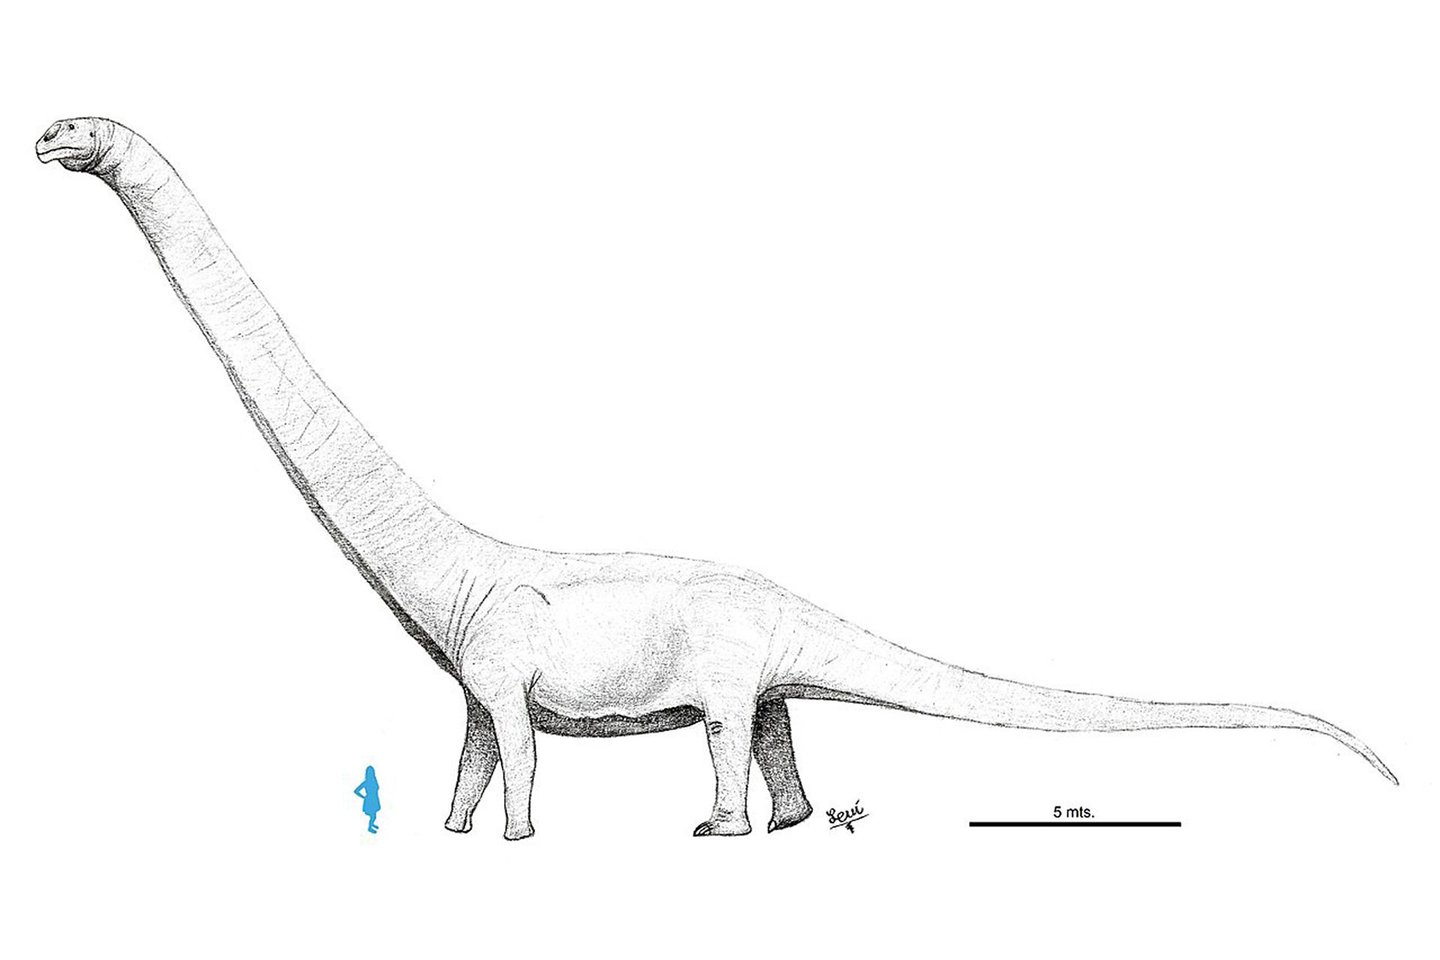  Palyginimui – Patagotitan mayorum ir žmogus. Bet naujai atrasto dinozauro kaulų fragmentai yra dar 10-20 proc. stambesni.